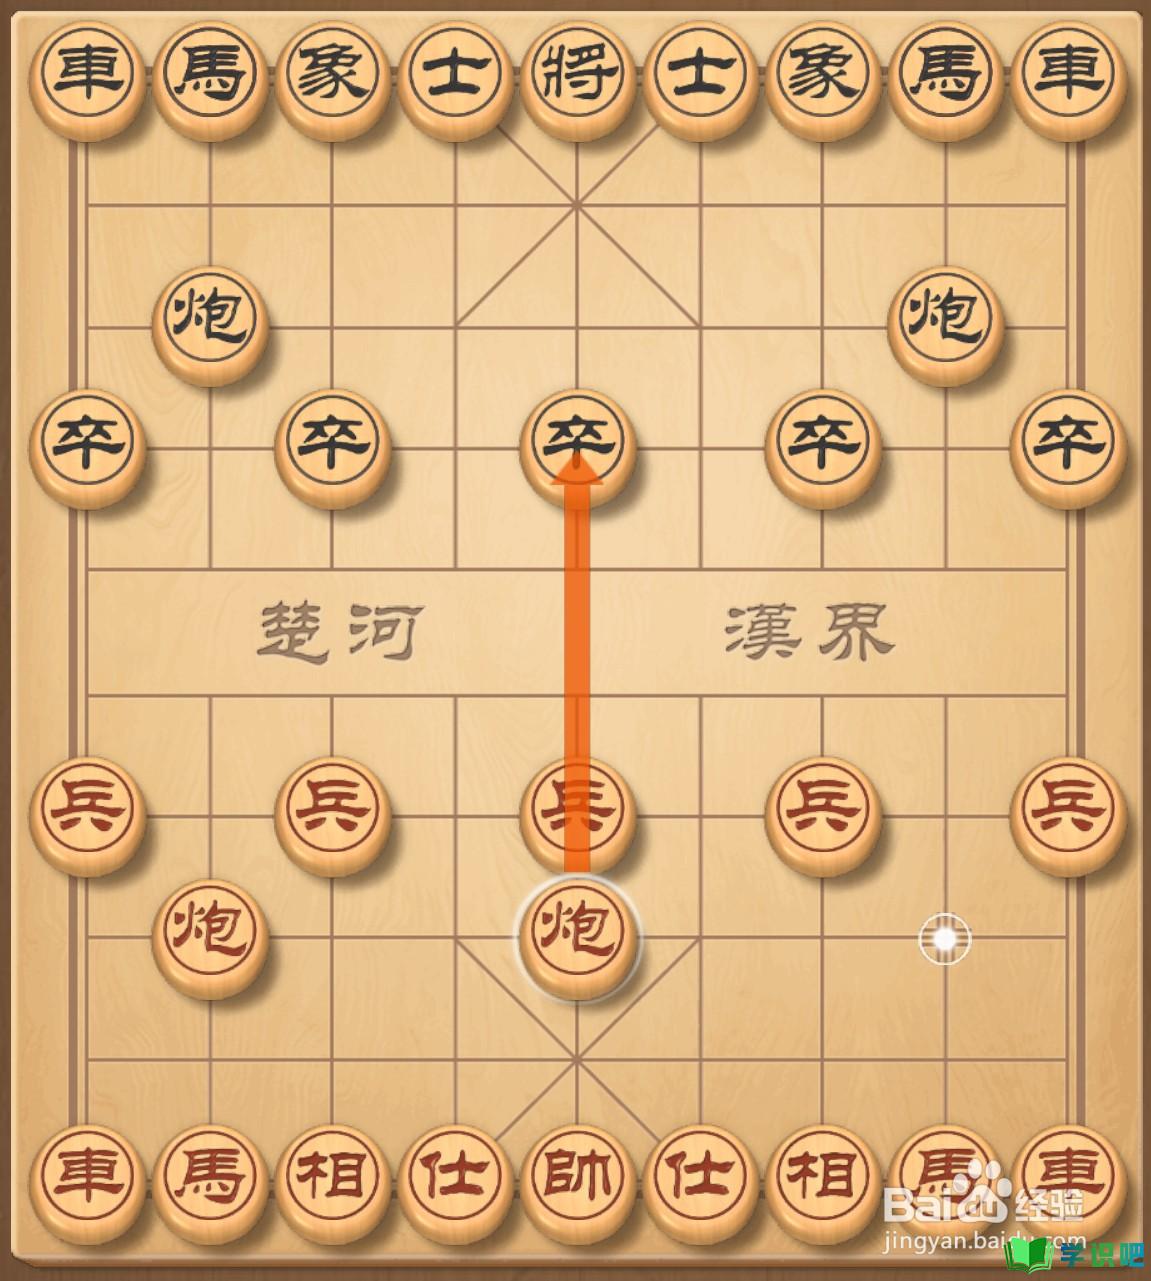 中国象棋怎么玩口诀？ 第6张